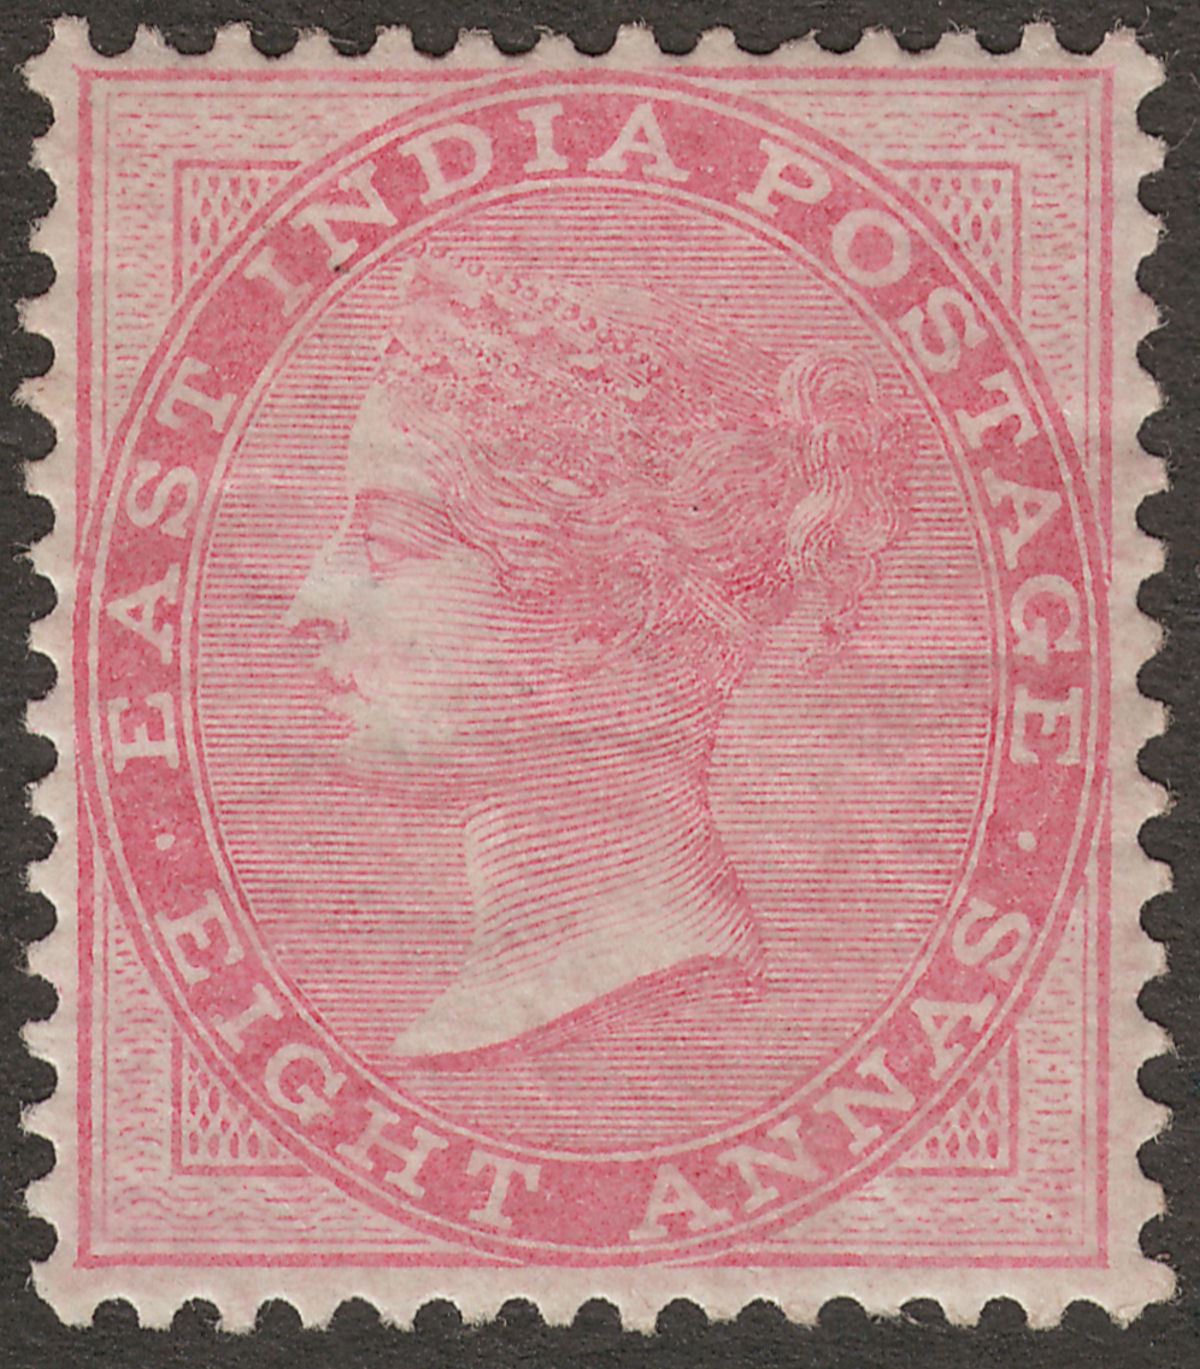 India 1868 Queen Victoria 8a Pale Rose Die II Mint SG74 cat £70